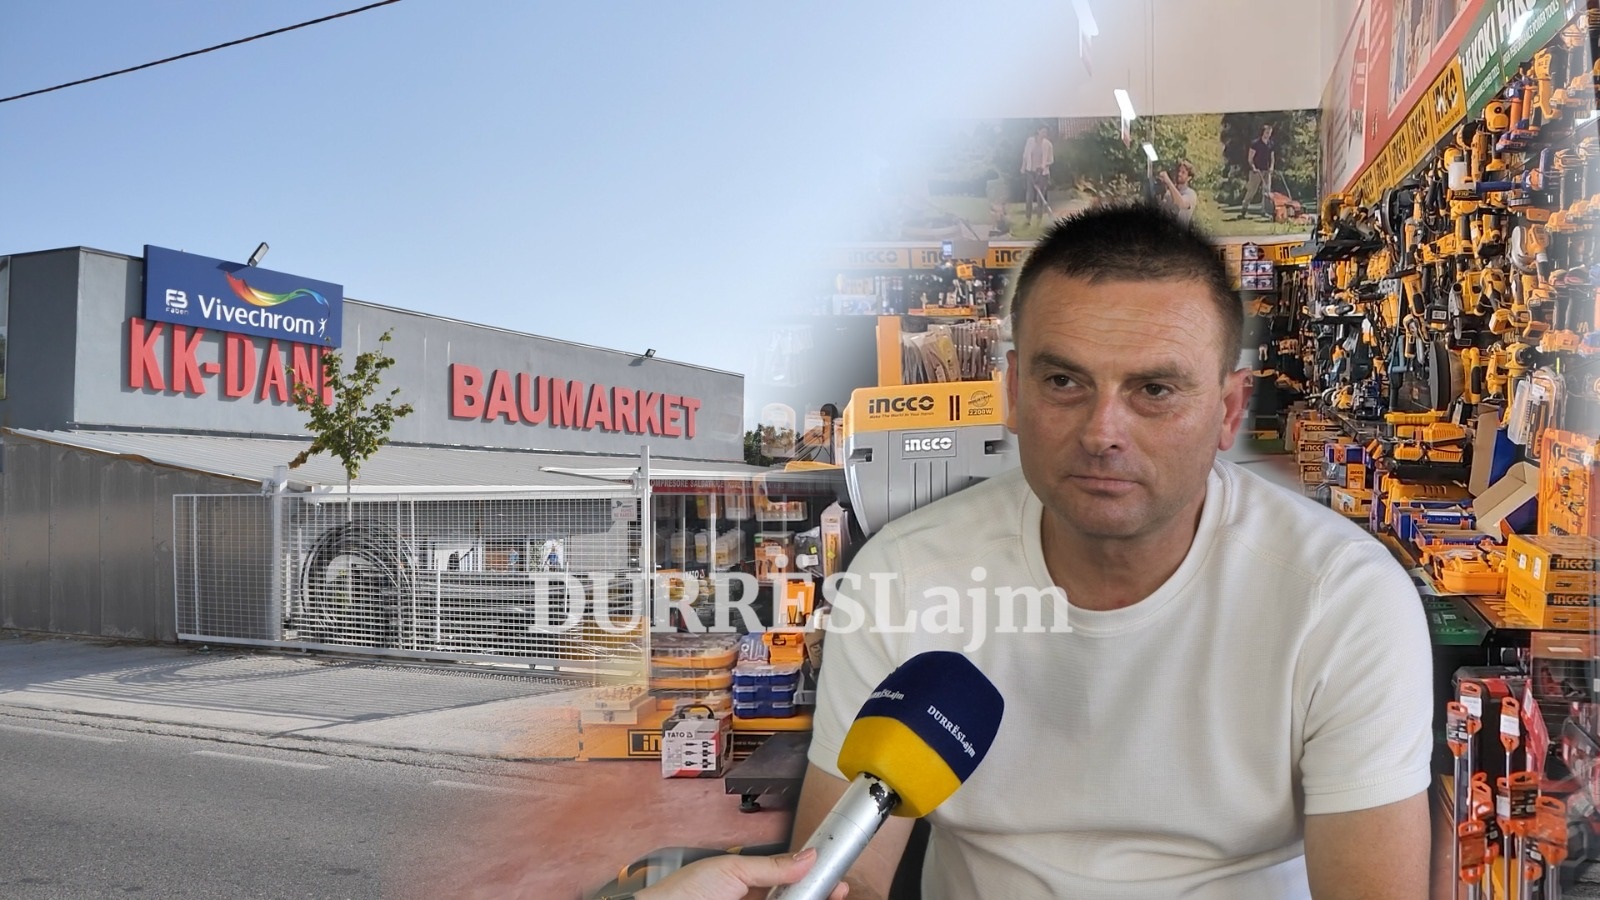 Sezoni veror në Baumarket KK Dani vjen plot surpriza, mbi 10 mijë produkte dhe oferta të parezistueshme (VIDEO)